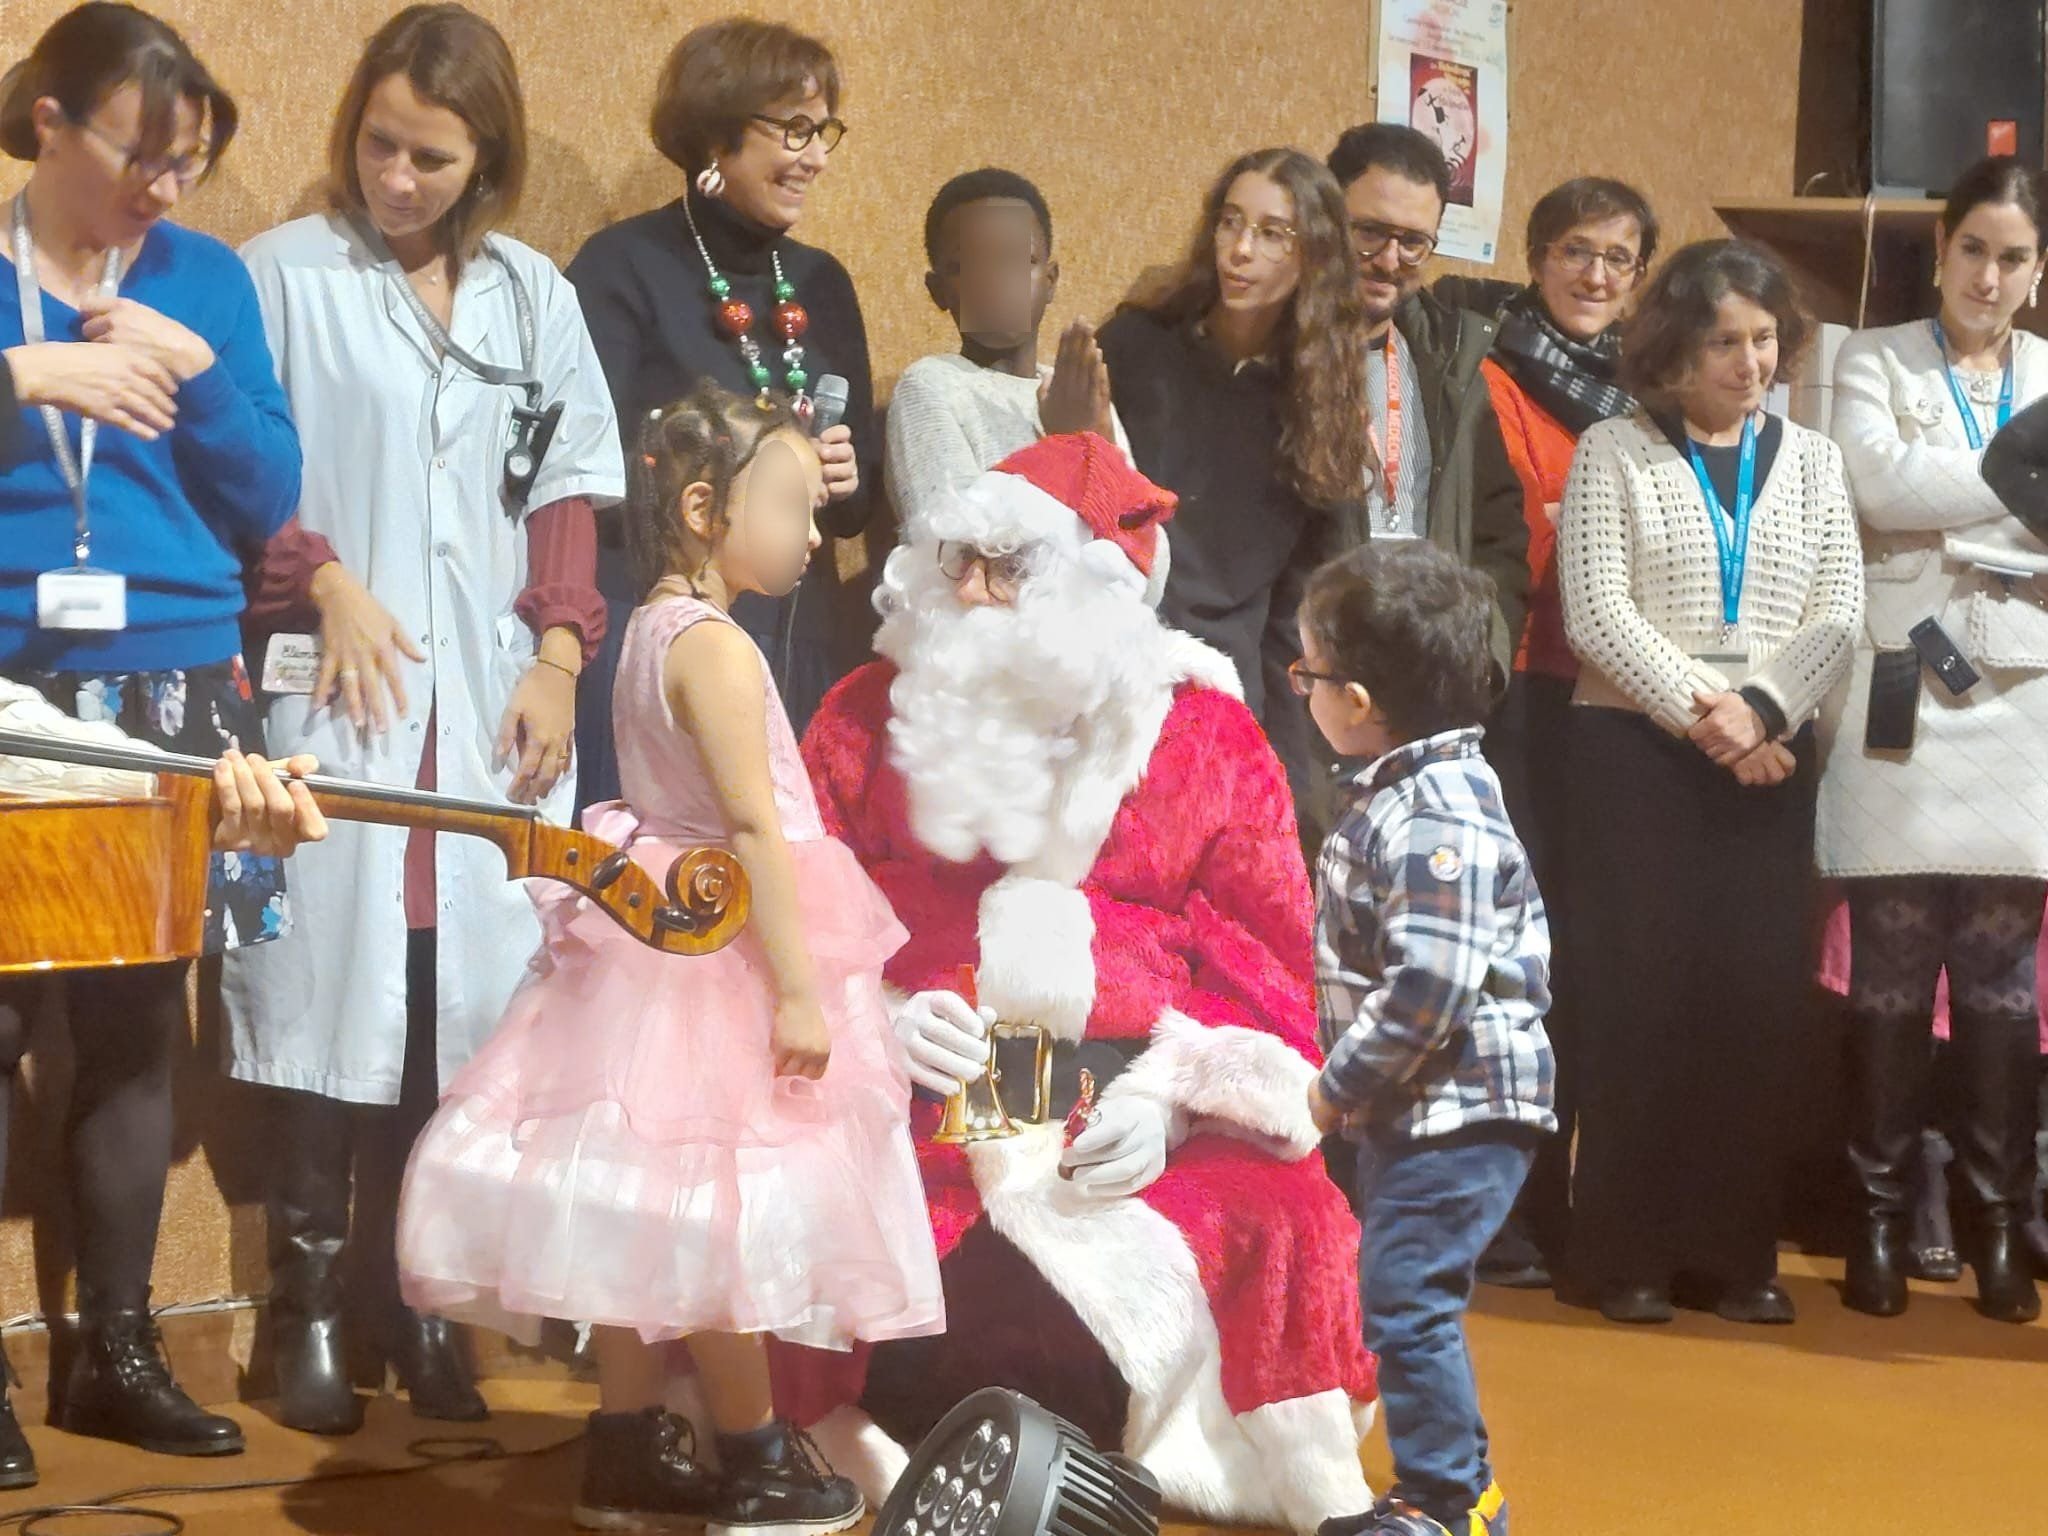 Le Chesnay-Rocquencourt (Yvelines), ce mercredi. La magie de Noël a offert une parenthèse joyeuse aux enfants malades de l'hôpital Mignot. LP/Stéphane Corby